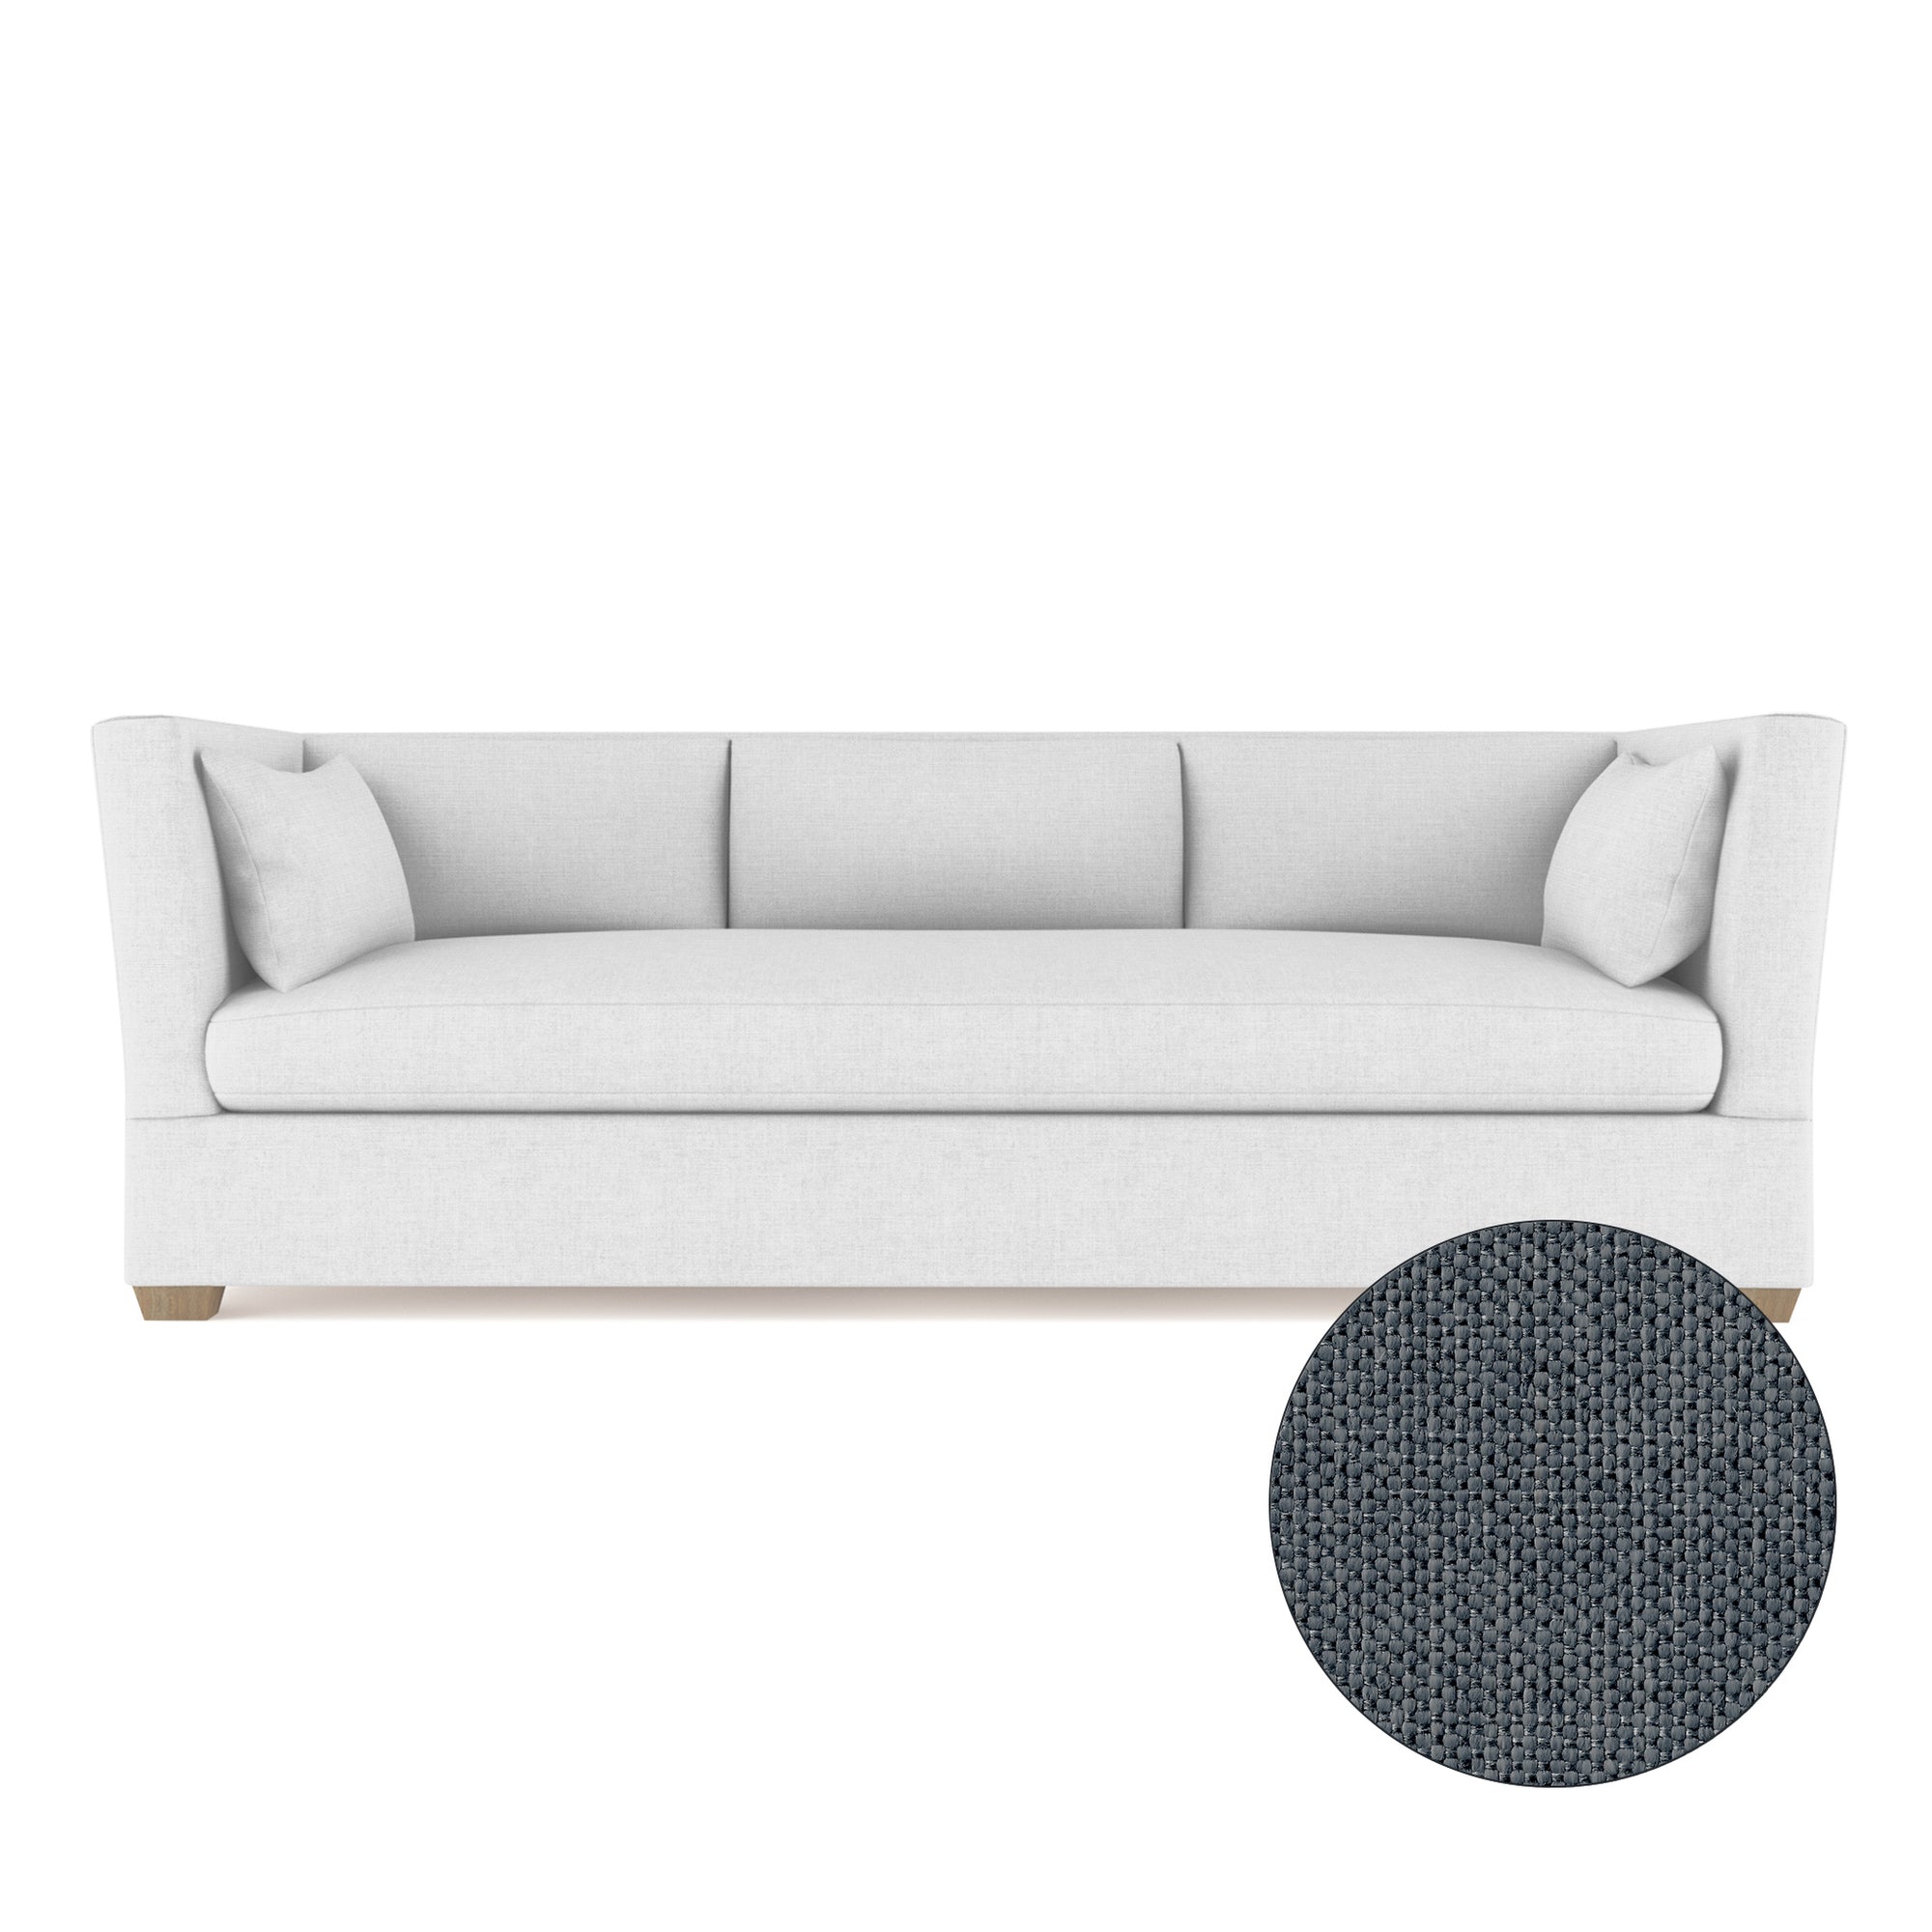 Rivington Sofa - Bluebell Pebble Weave Linen